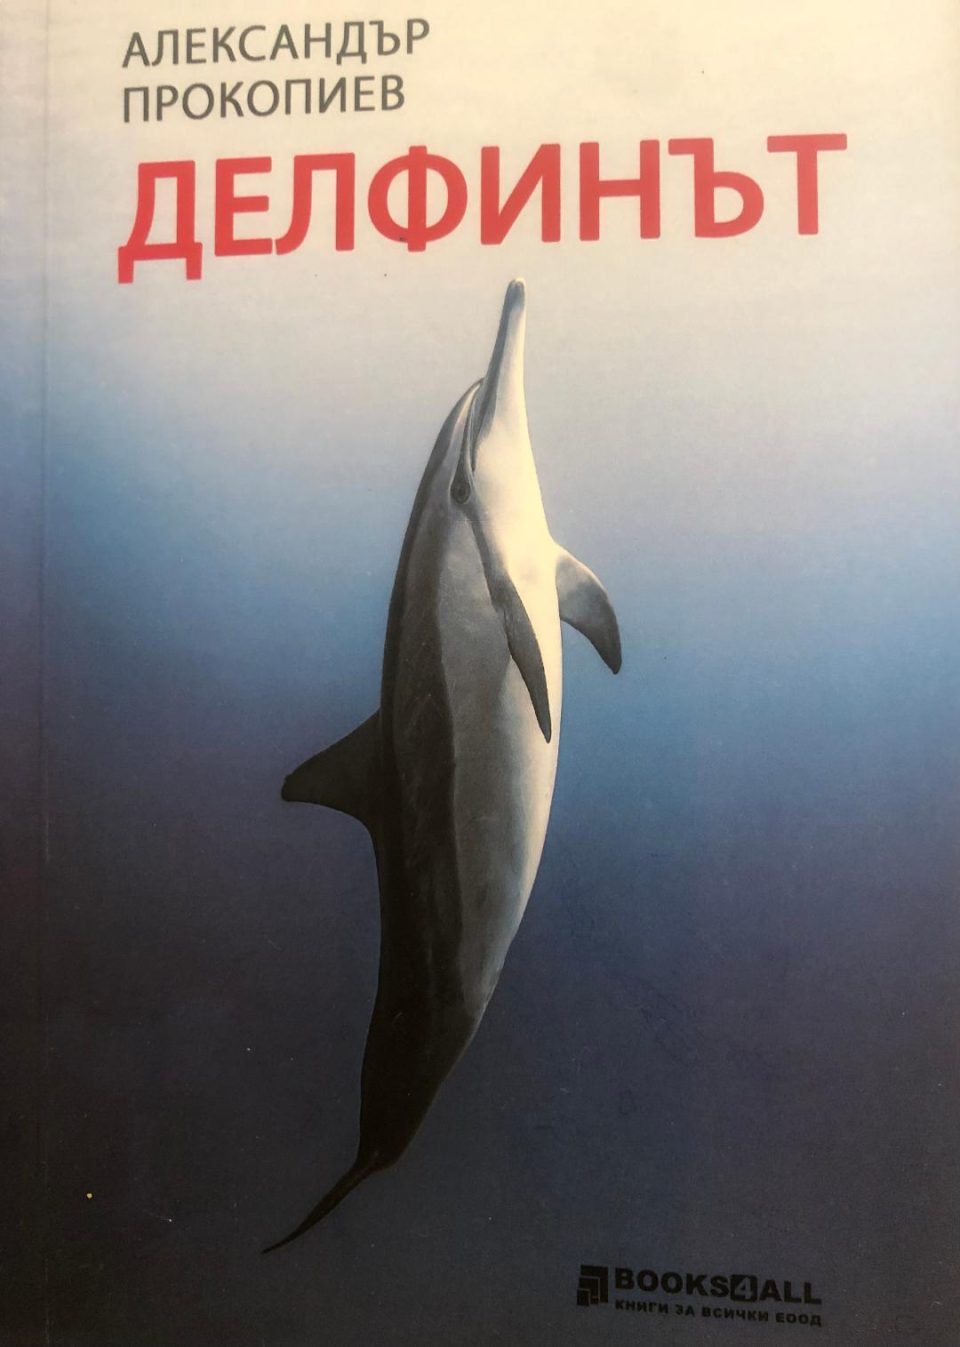 Книгата раскази „Делфинот“ на Александар Прокопиев објавена на бугарски јазик